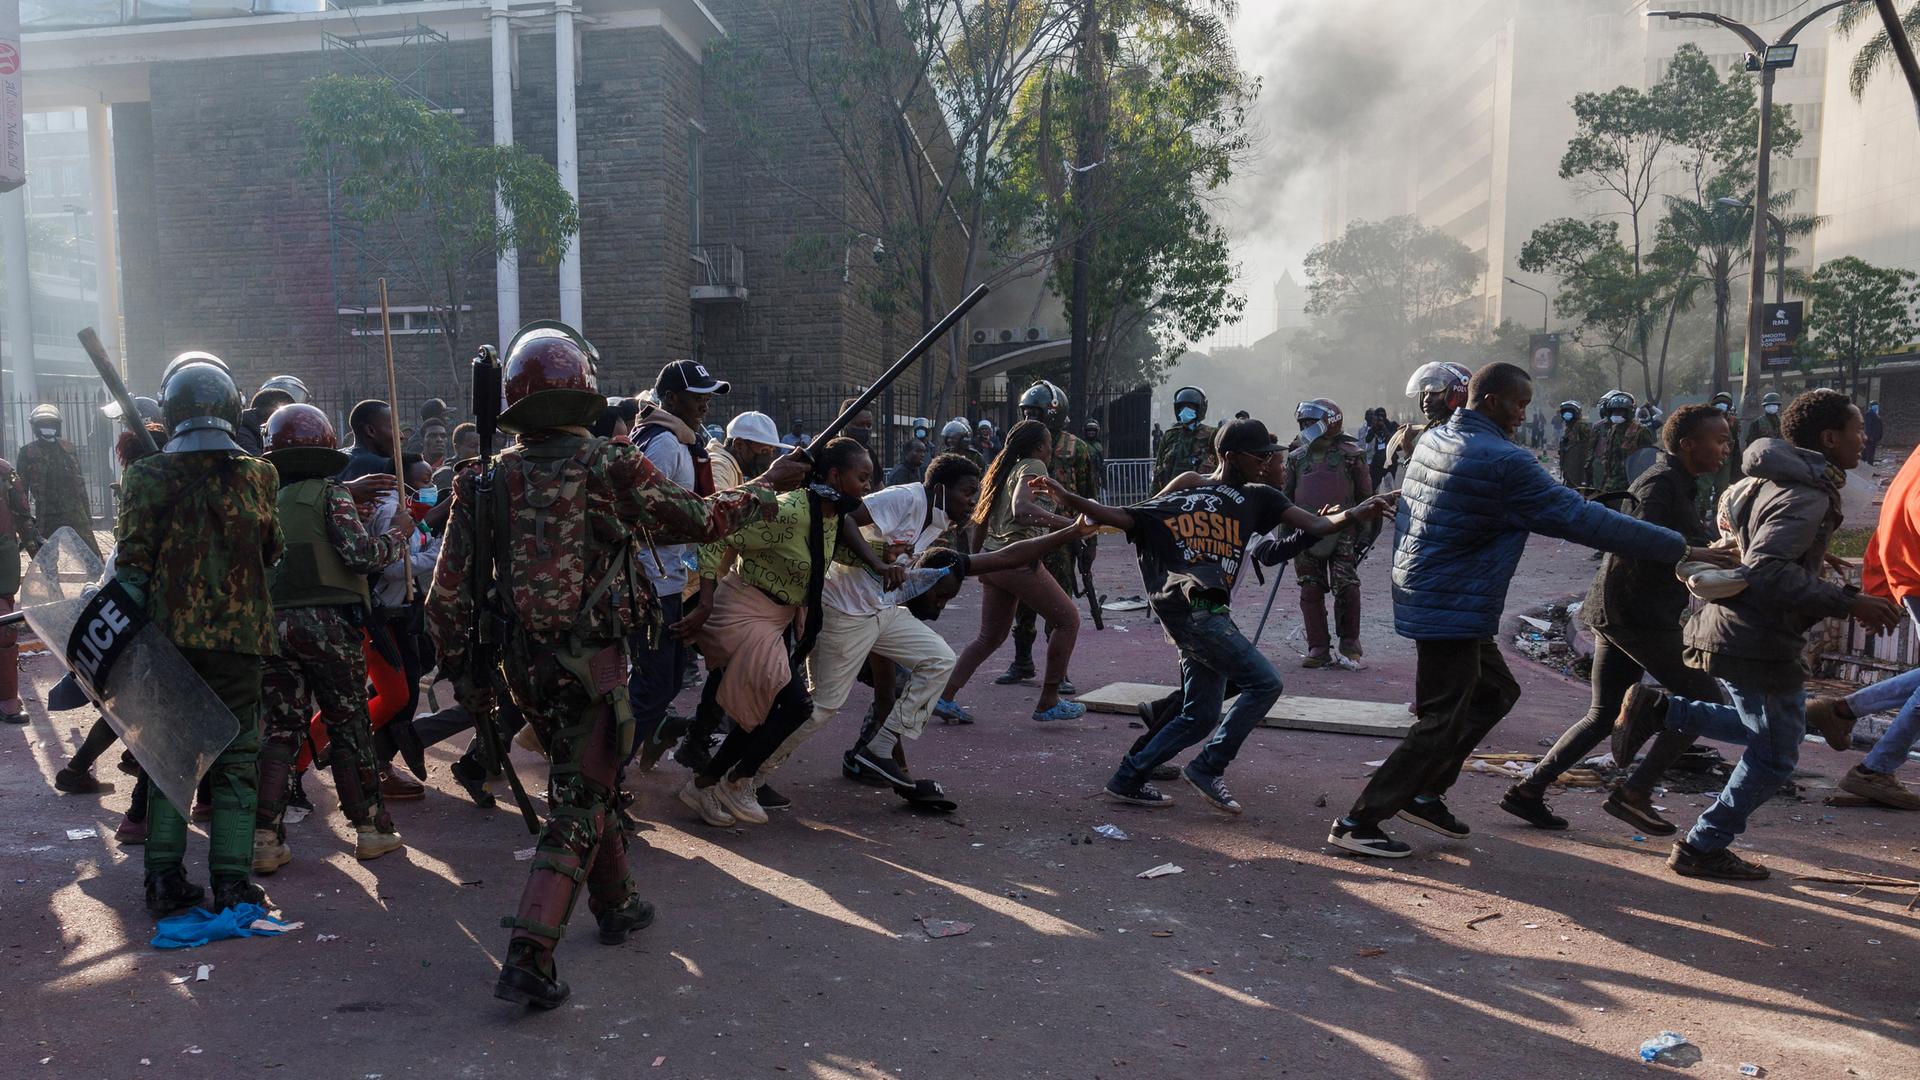 Demonstrierende Männer und Frauen halten sich in Nairobi an den Händen und laufen an zwei schwer bewaffneten Polizisten vorbei. Im Hintergrund steigt Rauch auf.